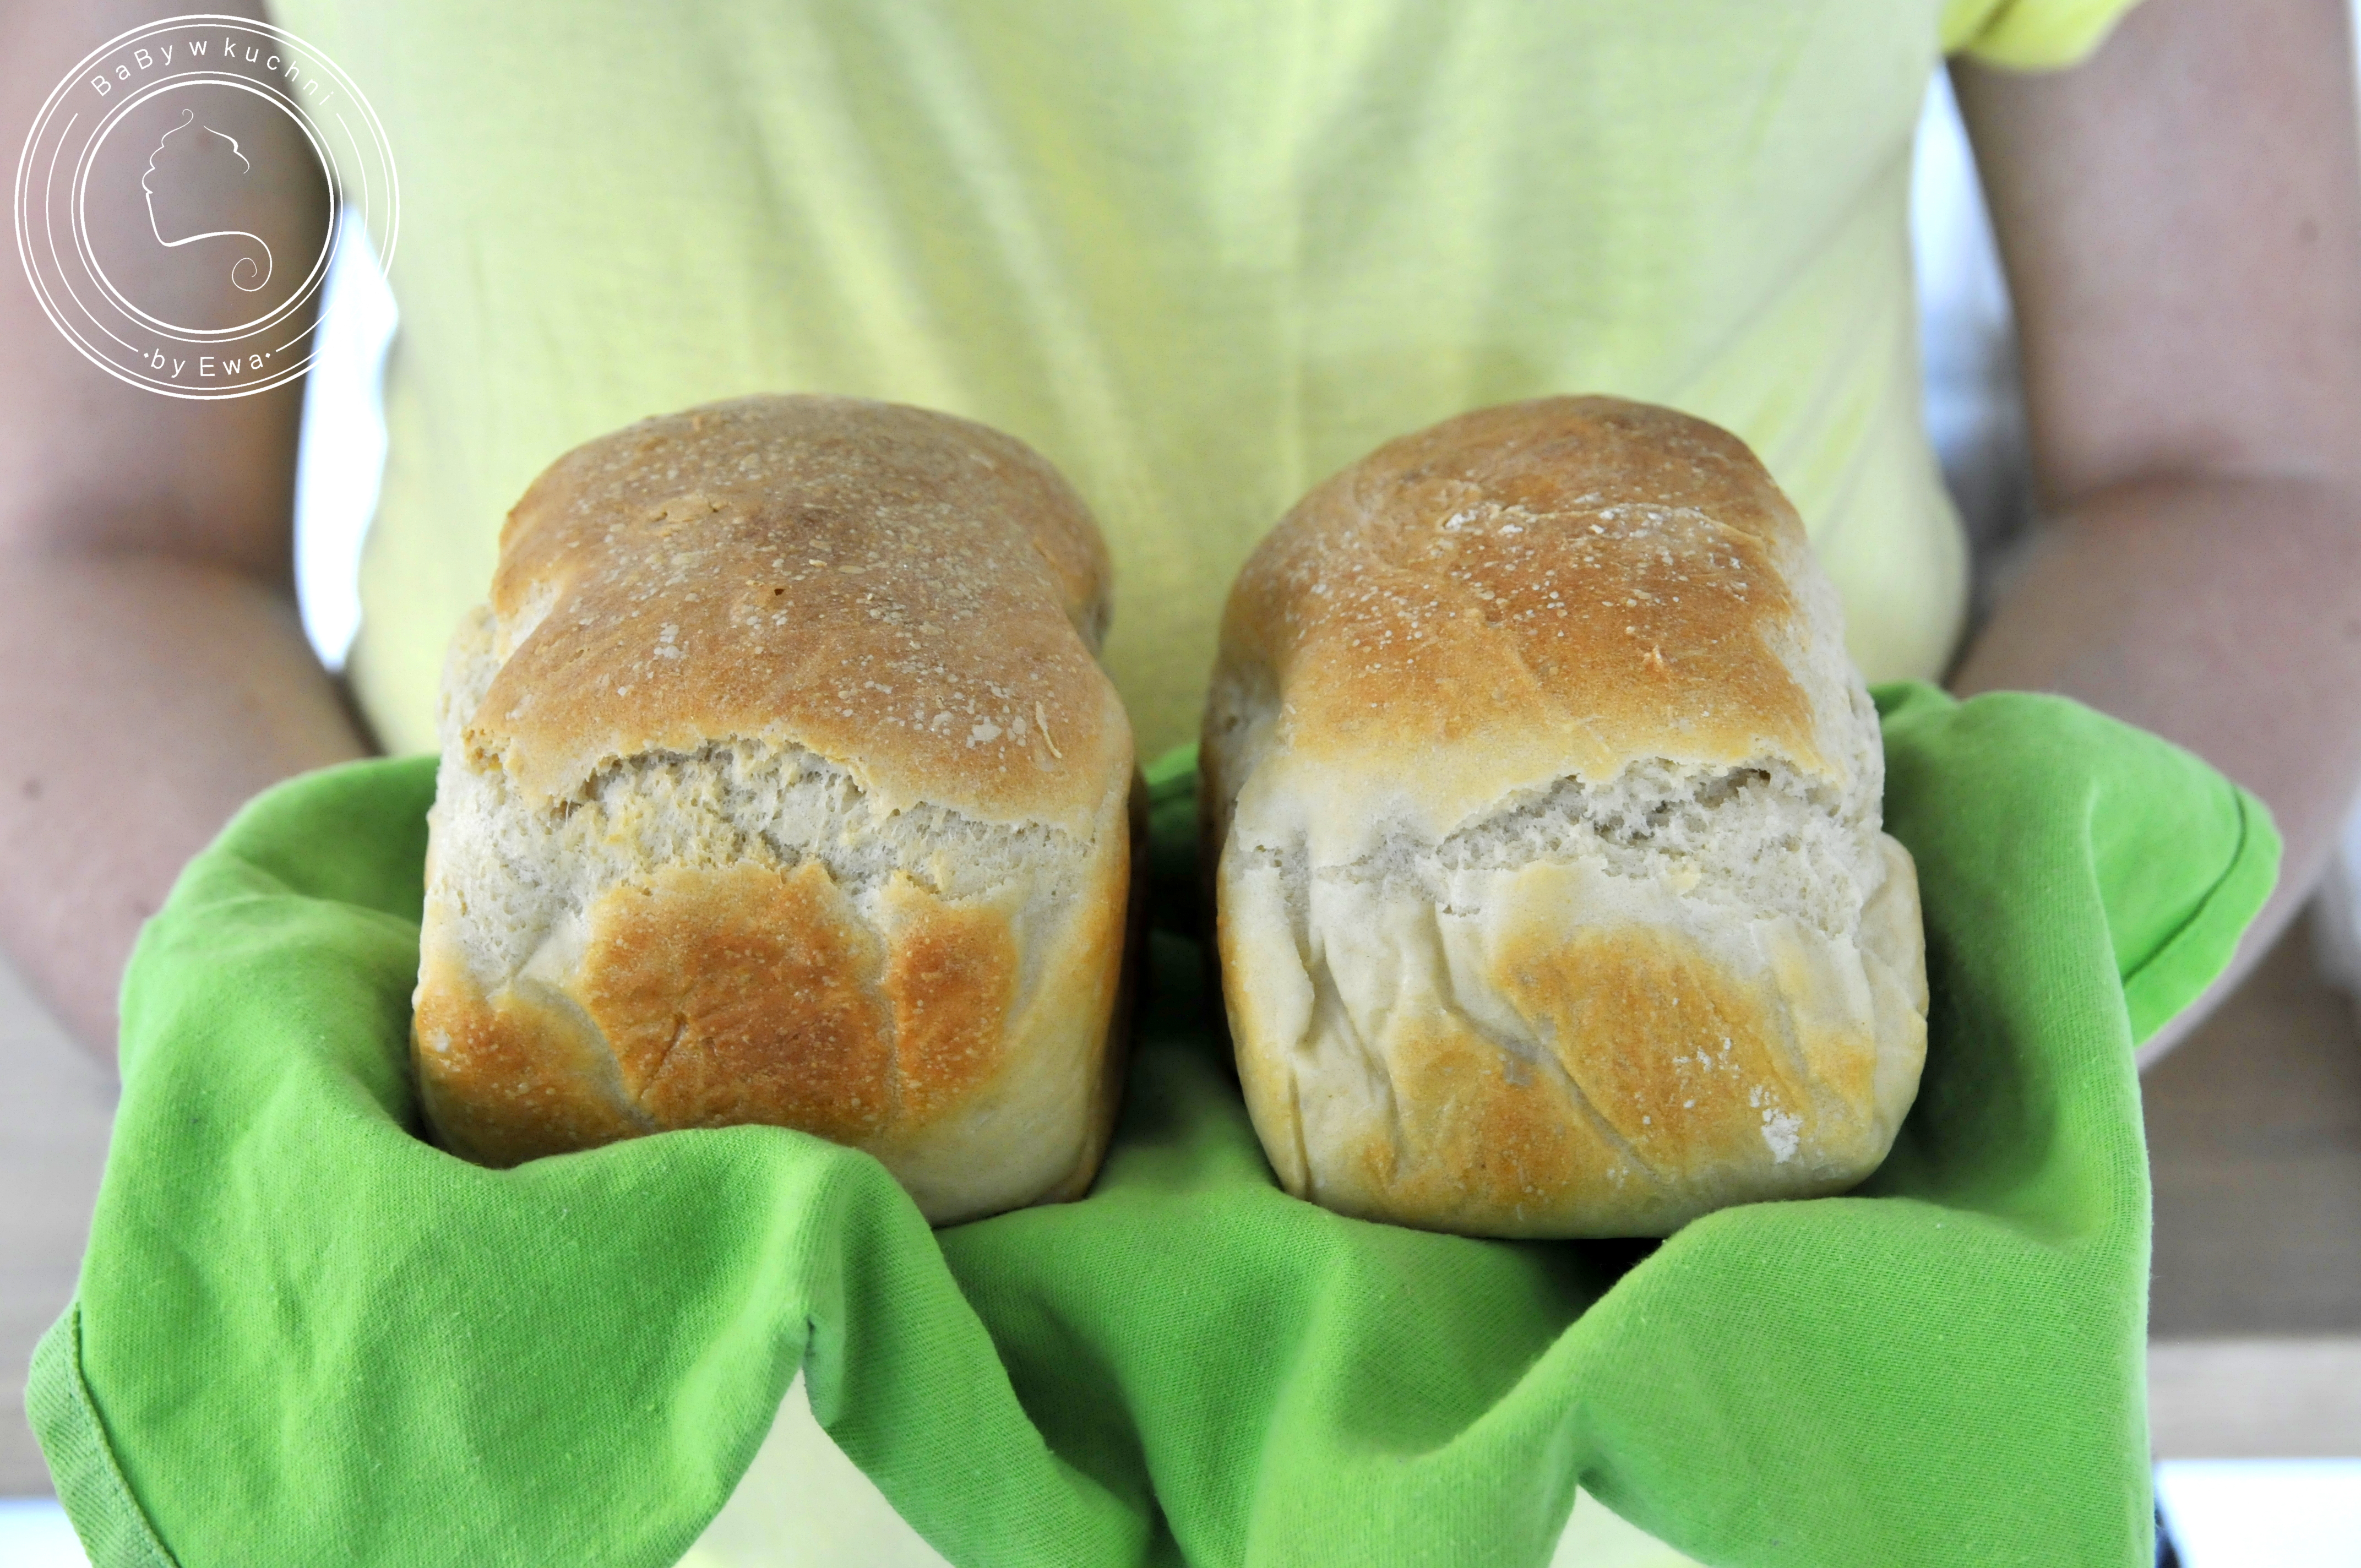 Lniany worek od AleWorek - jak przechowywać chleb